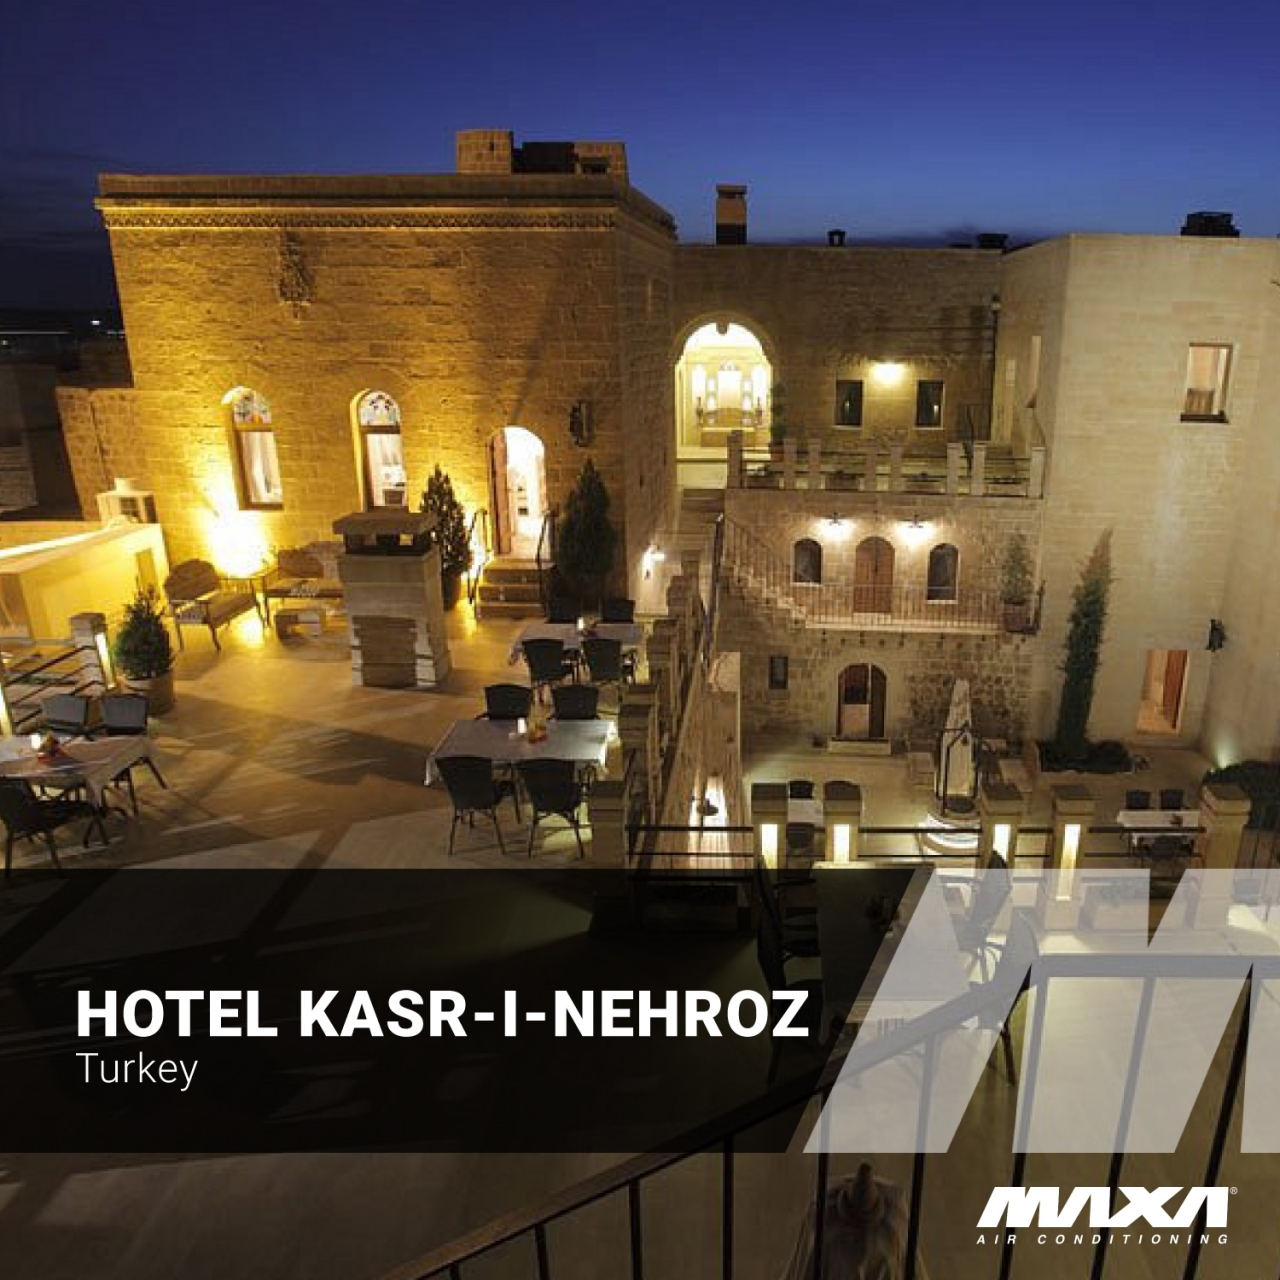 Hotel-Kasr-i-Nehroz-in-Turkey-1